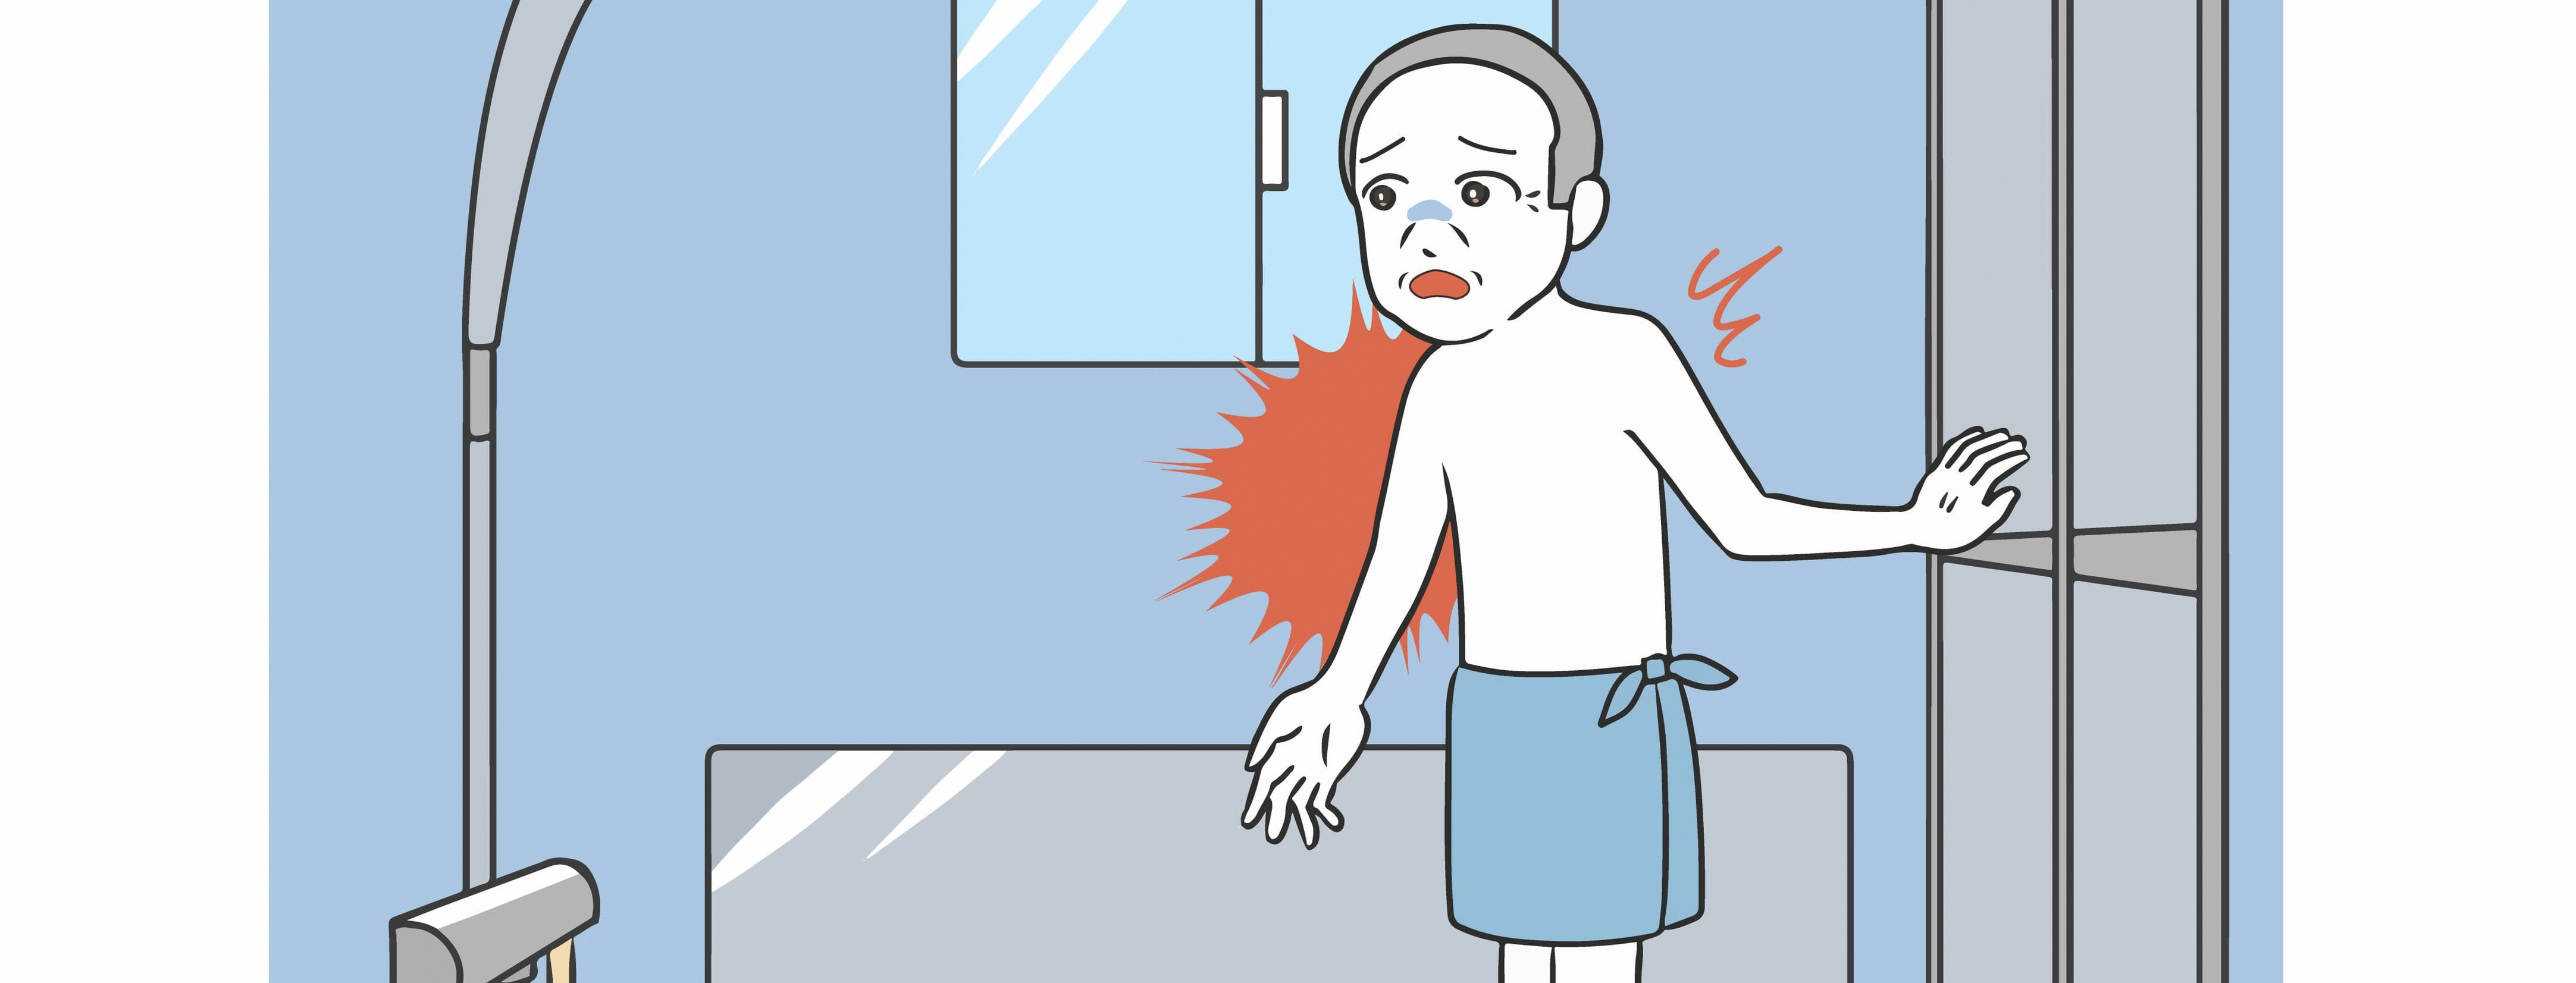 ヒートショックとは？症状や対策、お風呂等での注意点について解説